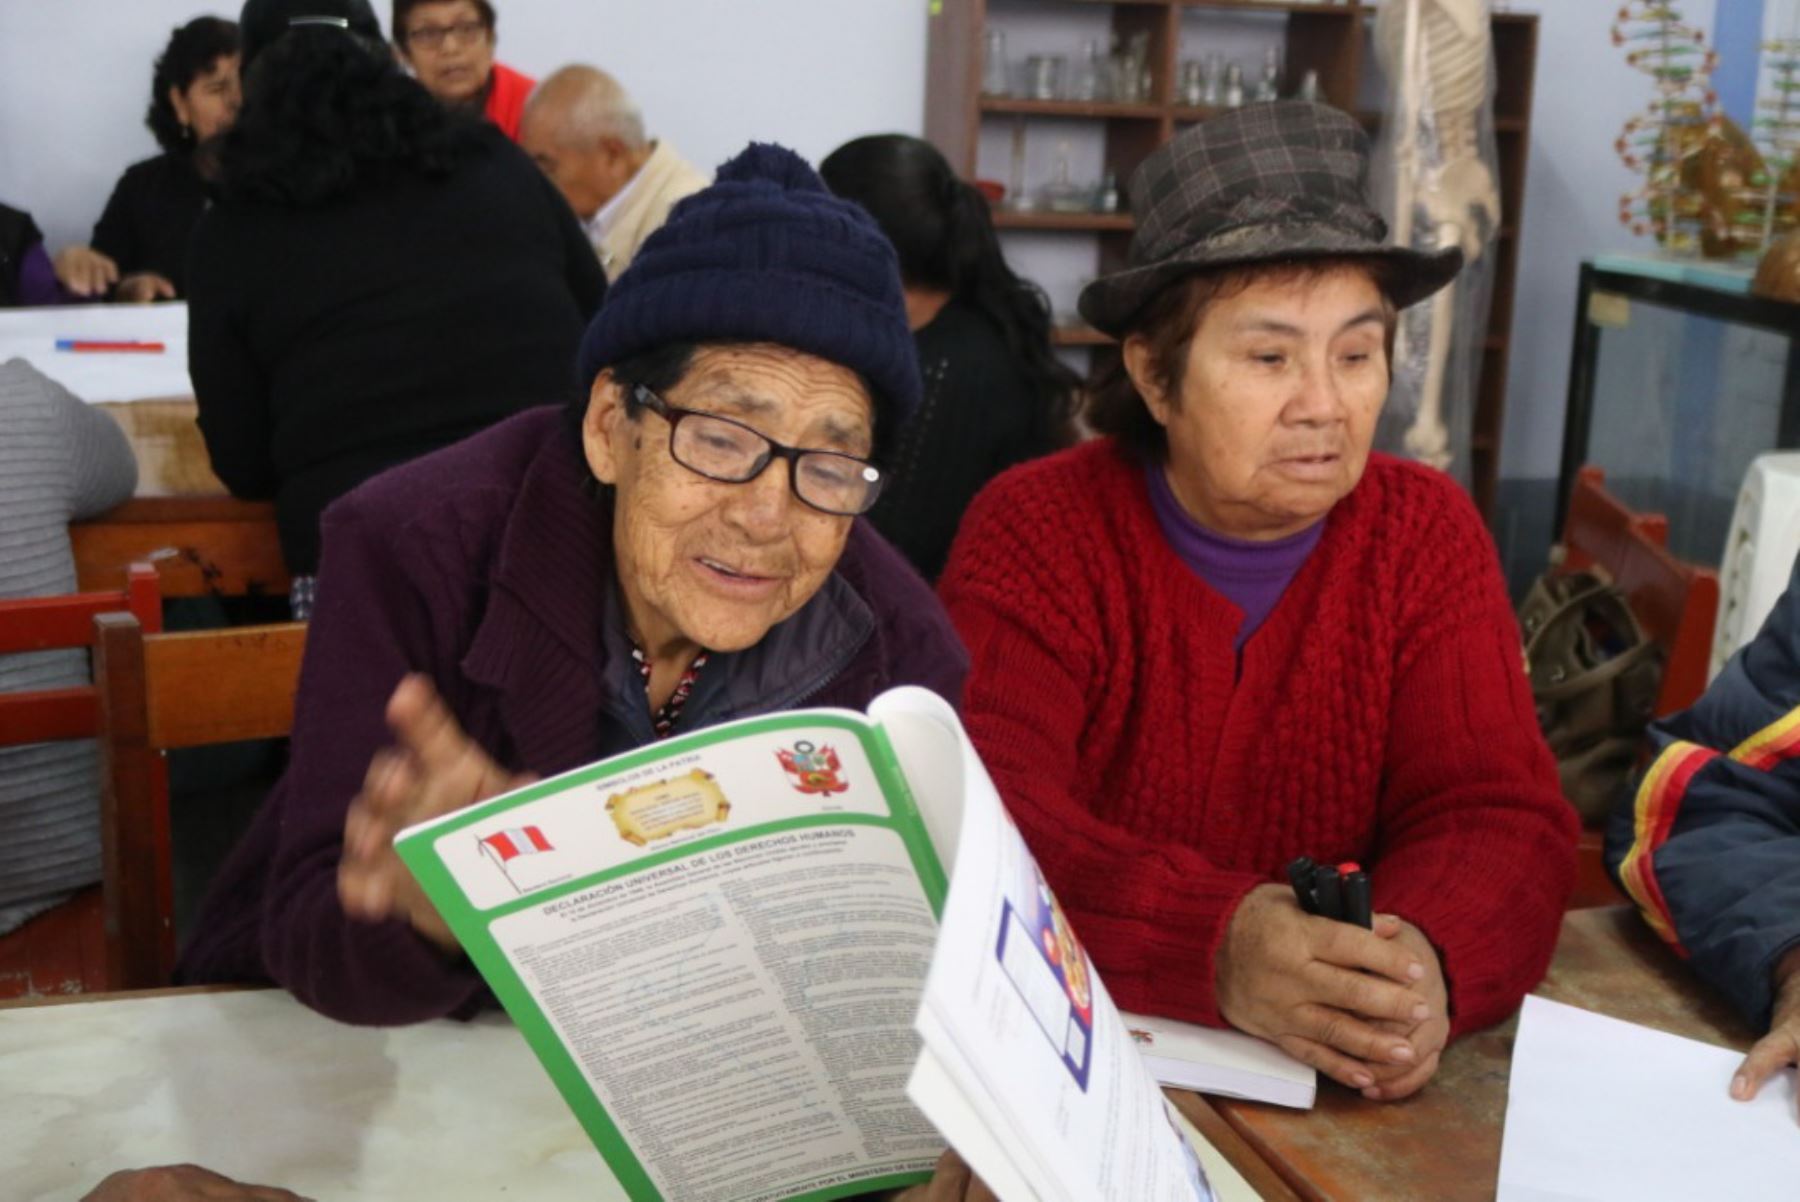 Miles de adultos mayores siguen estudios gracias a programas del Minedu. Foto: Andina/Difusión